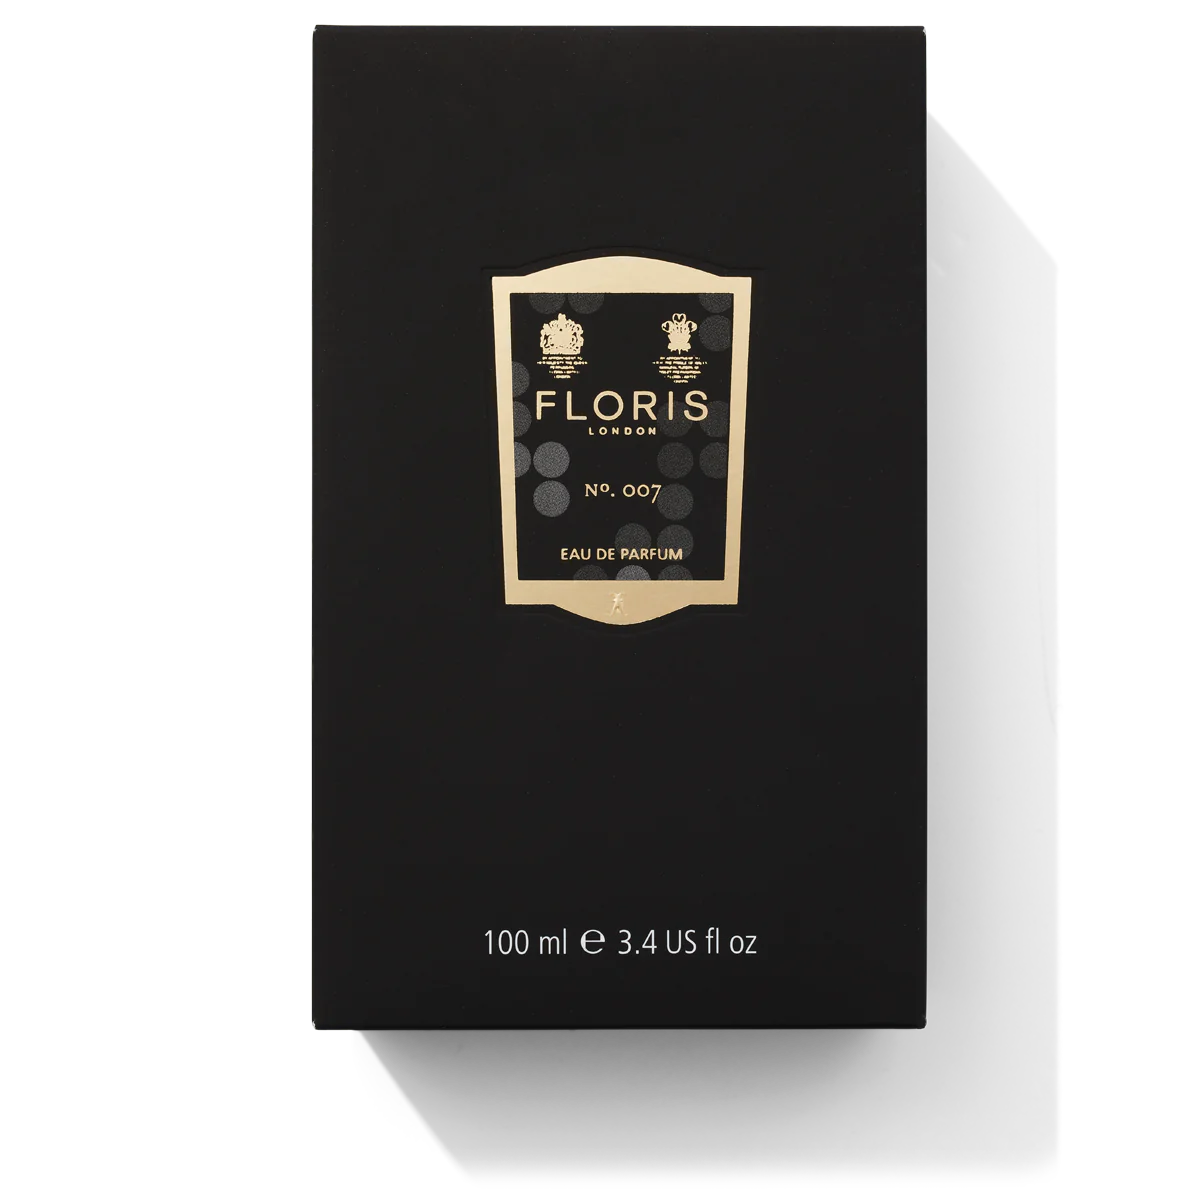 Floris London No. 007 Eau de Parfum Box